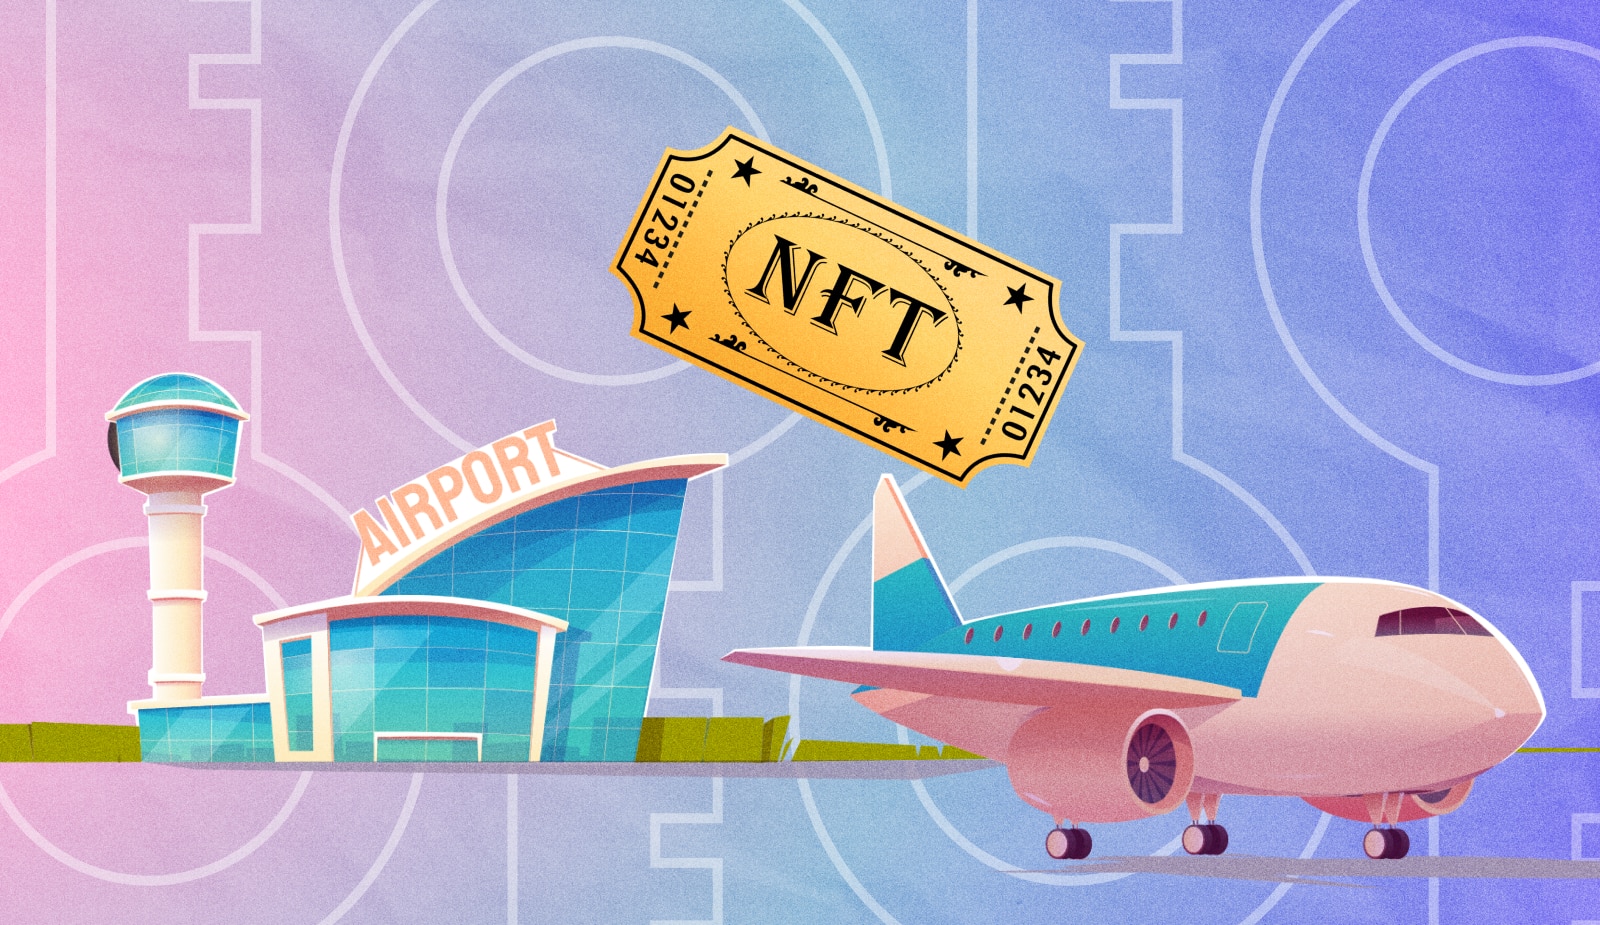 Біржа Lemon у партнерстві з TravelX запустила продаж авіаквитків у форматі NFT. Головний колаж новини.